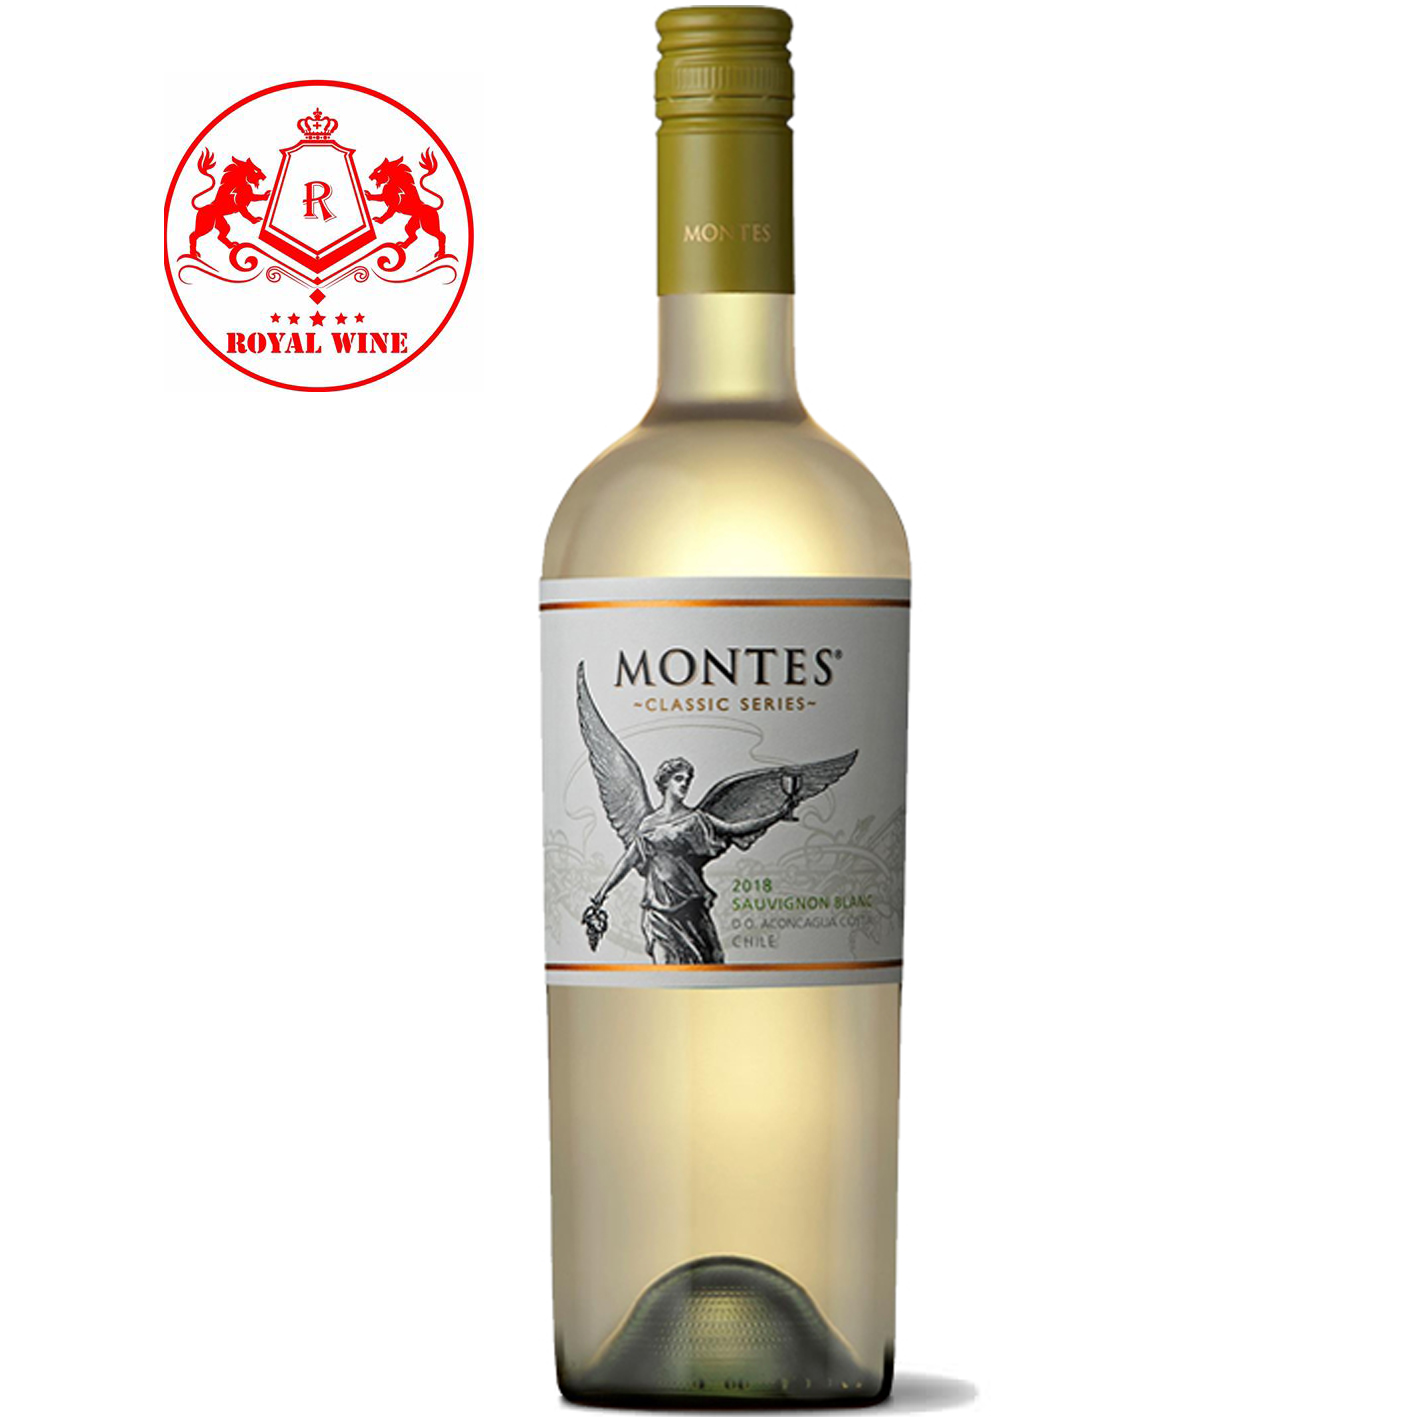 MONTES Classic Series Sauvignon Blanc